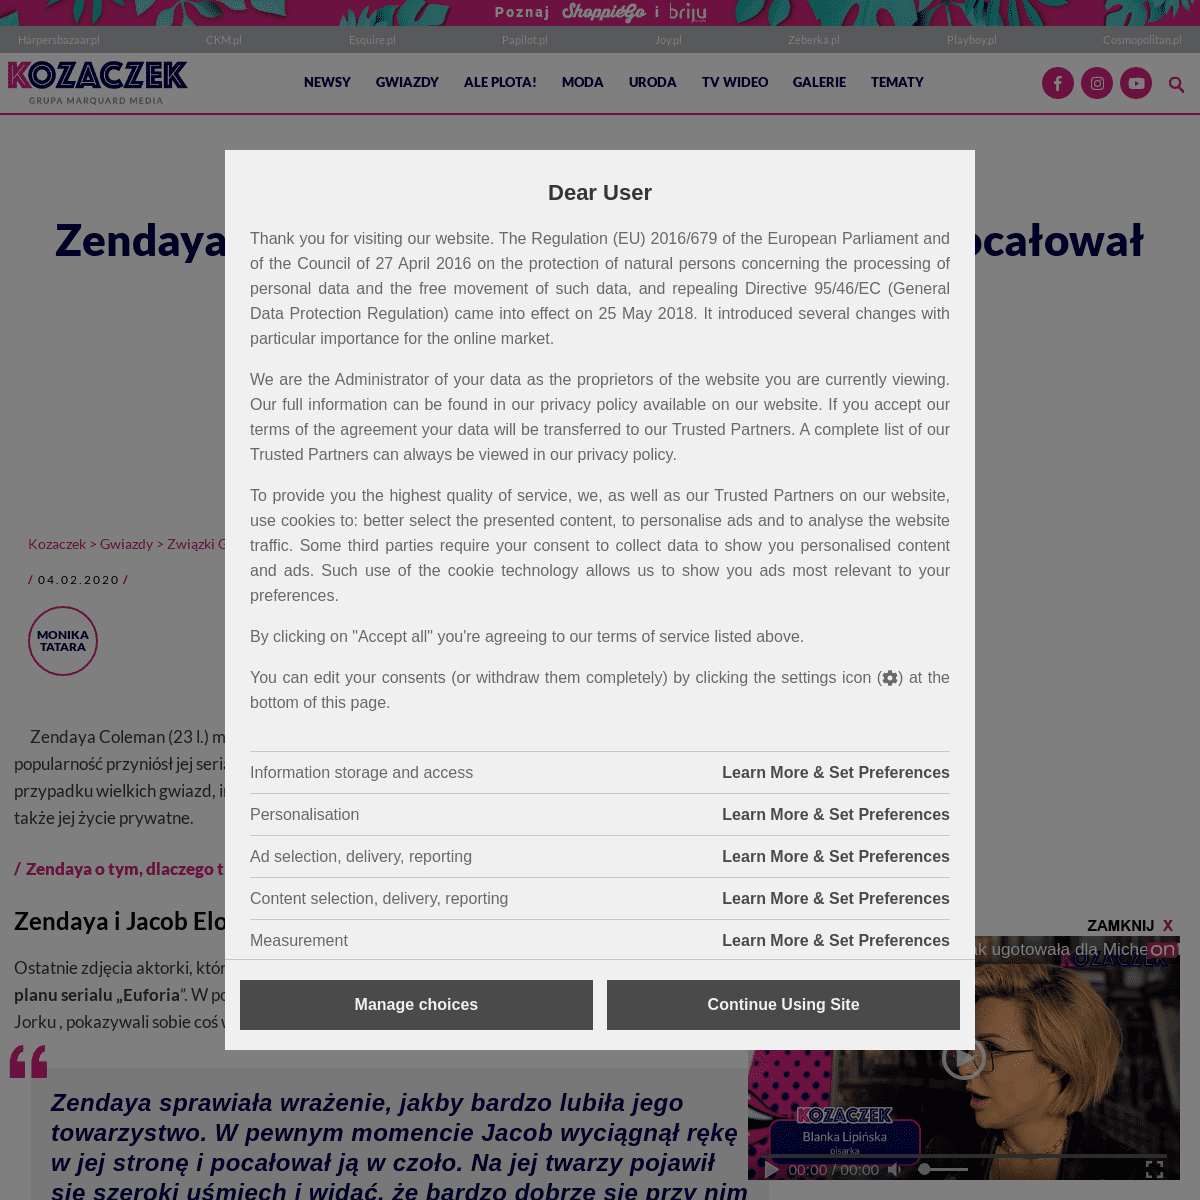 A complete backup of www.kozaczek.pl/zendaya-spotyka-sie-z-kolega-z-euforii-pocalowal-ja-w-czolo/